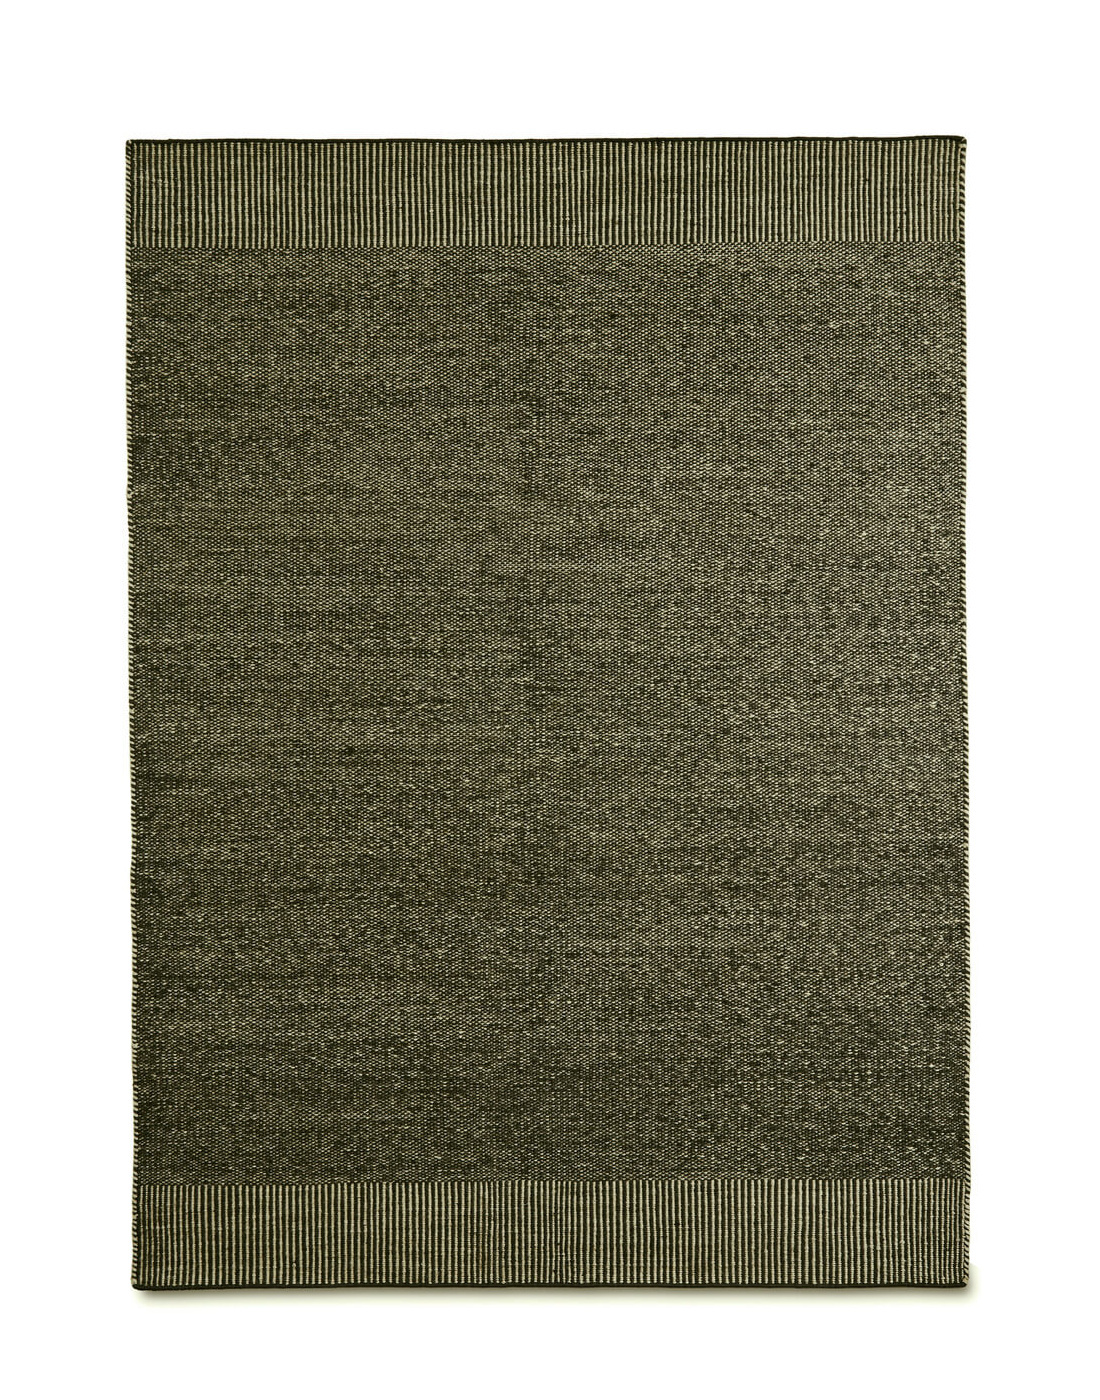 Rombo Teppich, 75 x 200 cm, moss green